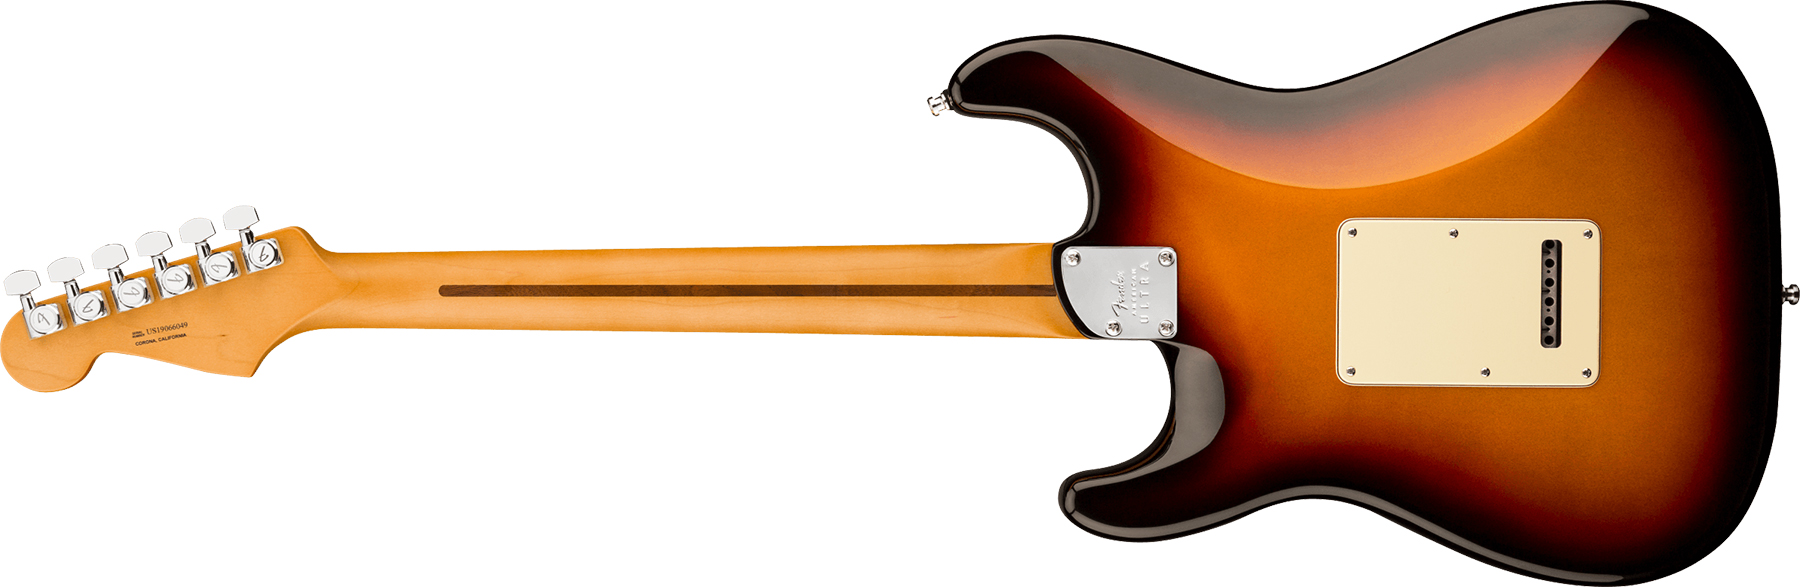 Fender Strat American Ultra Hss 2019 Usa Rw - Ultraburst - Elektrische gitaar in Str-vorm - Variation 1